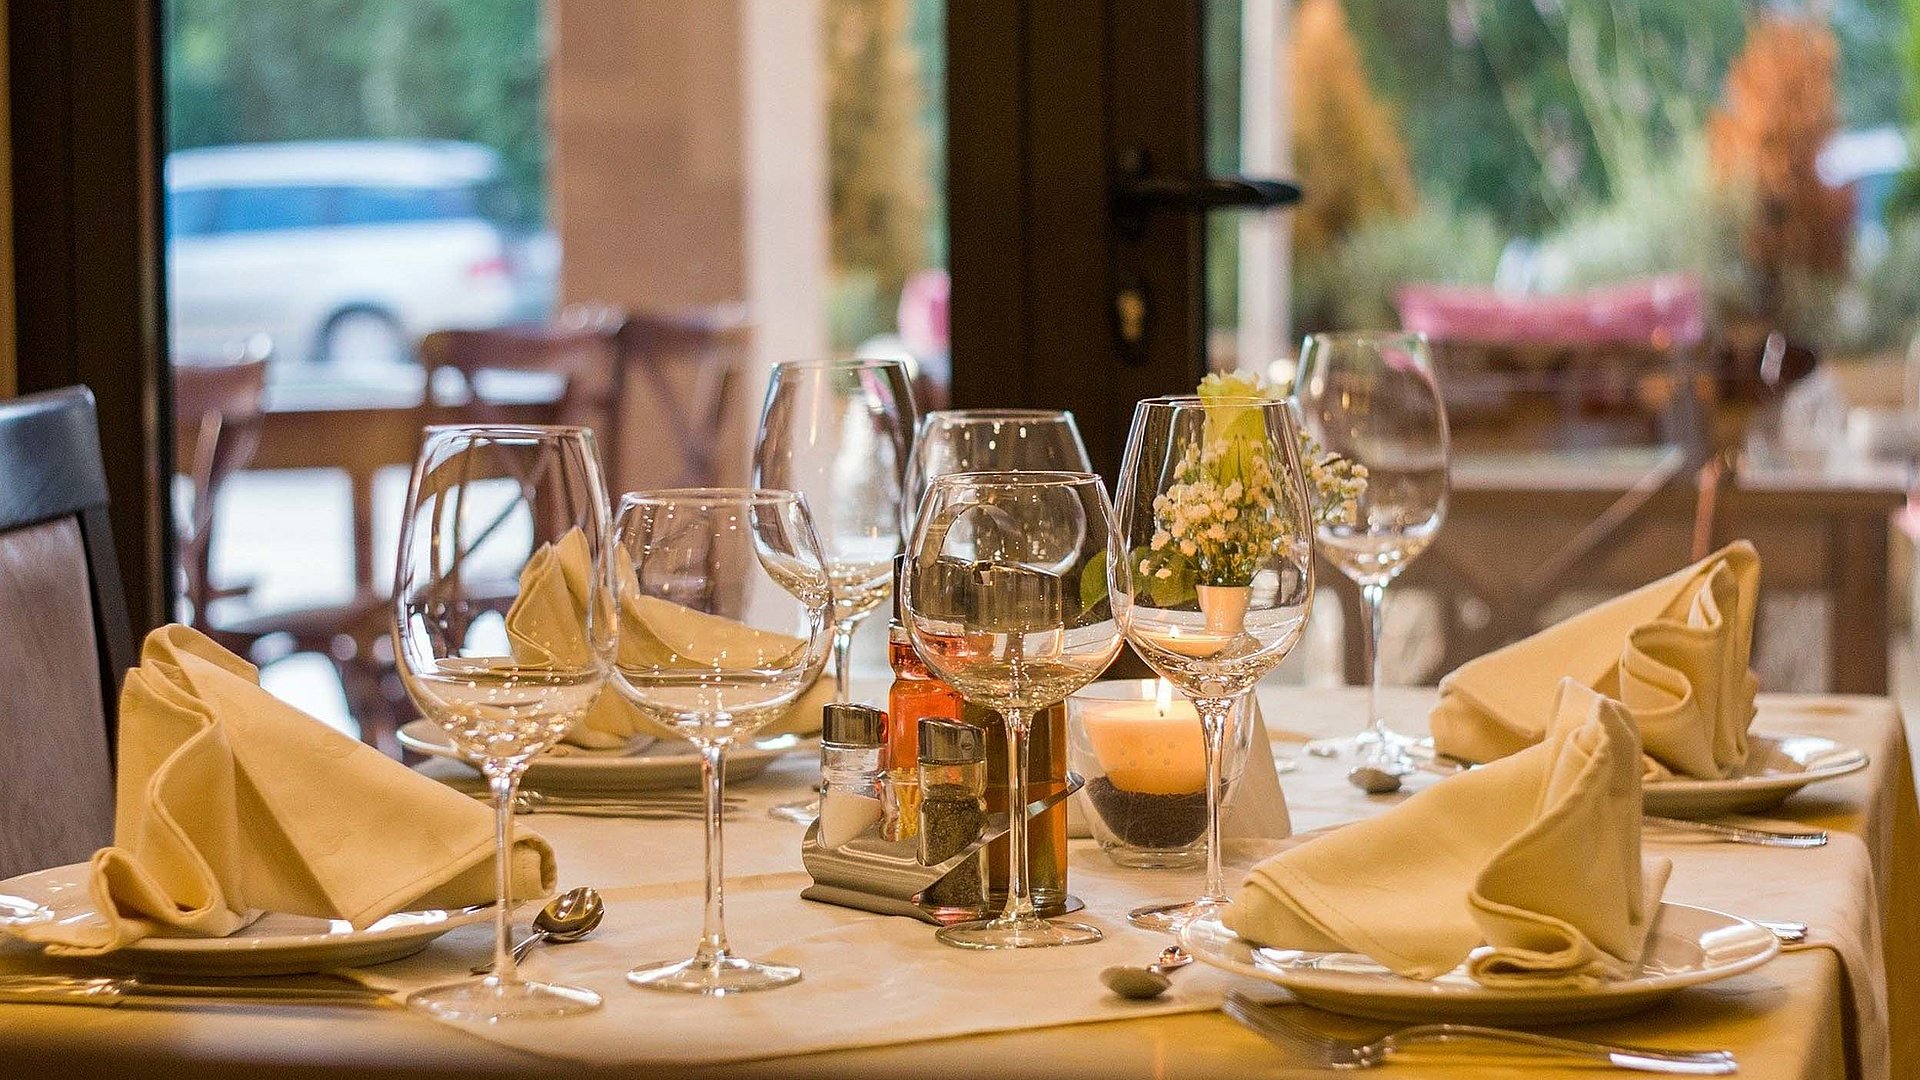 Gastronomie im Panorama in Mittelfranken - im Restaurant; bedeckter Tisch mit Weingläsern